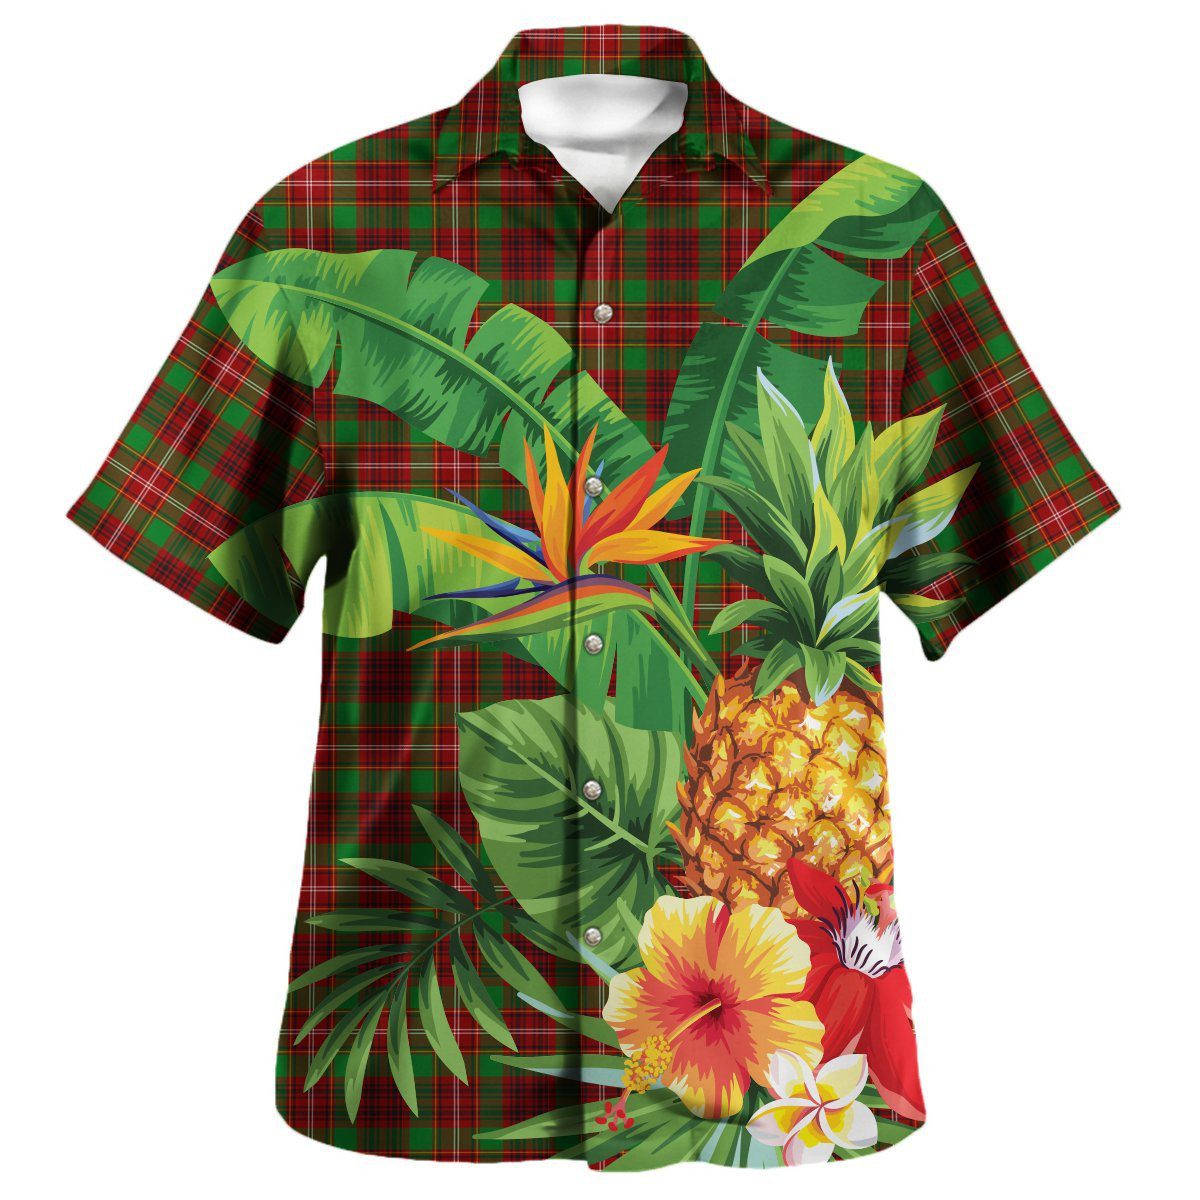 Ainslie Tartan Aloha Shirt version 2